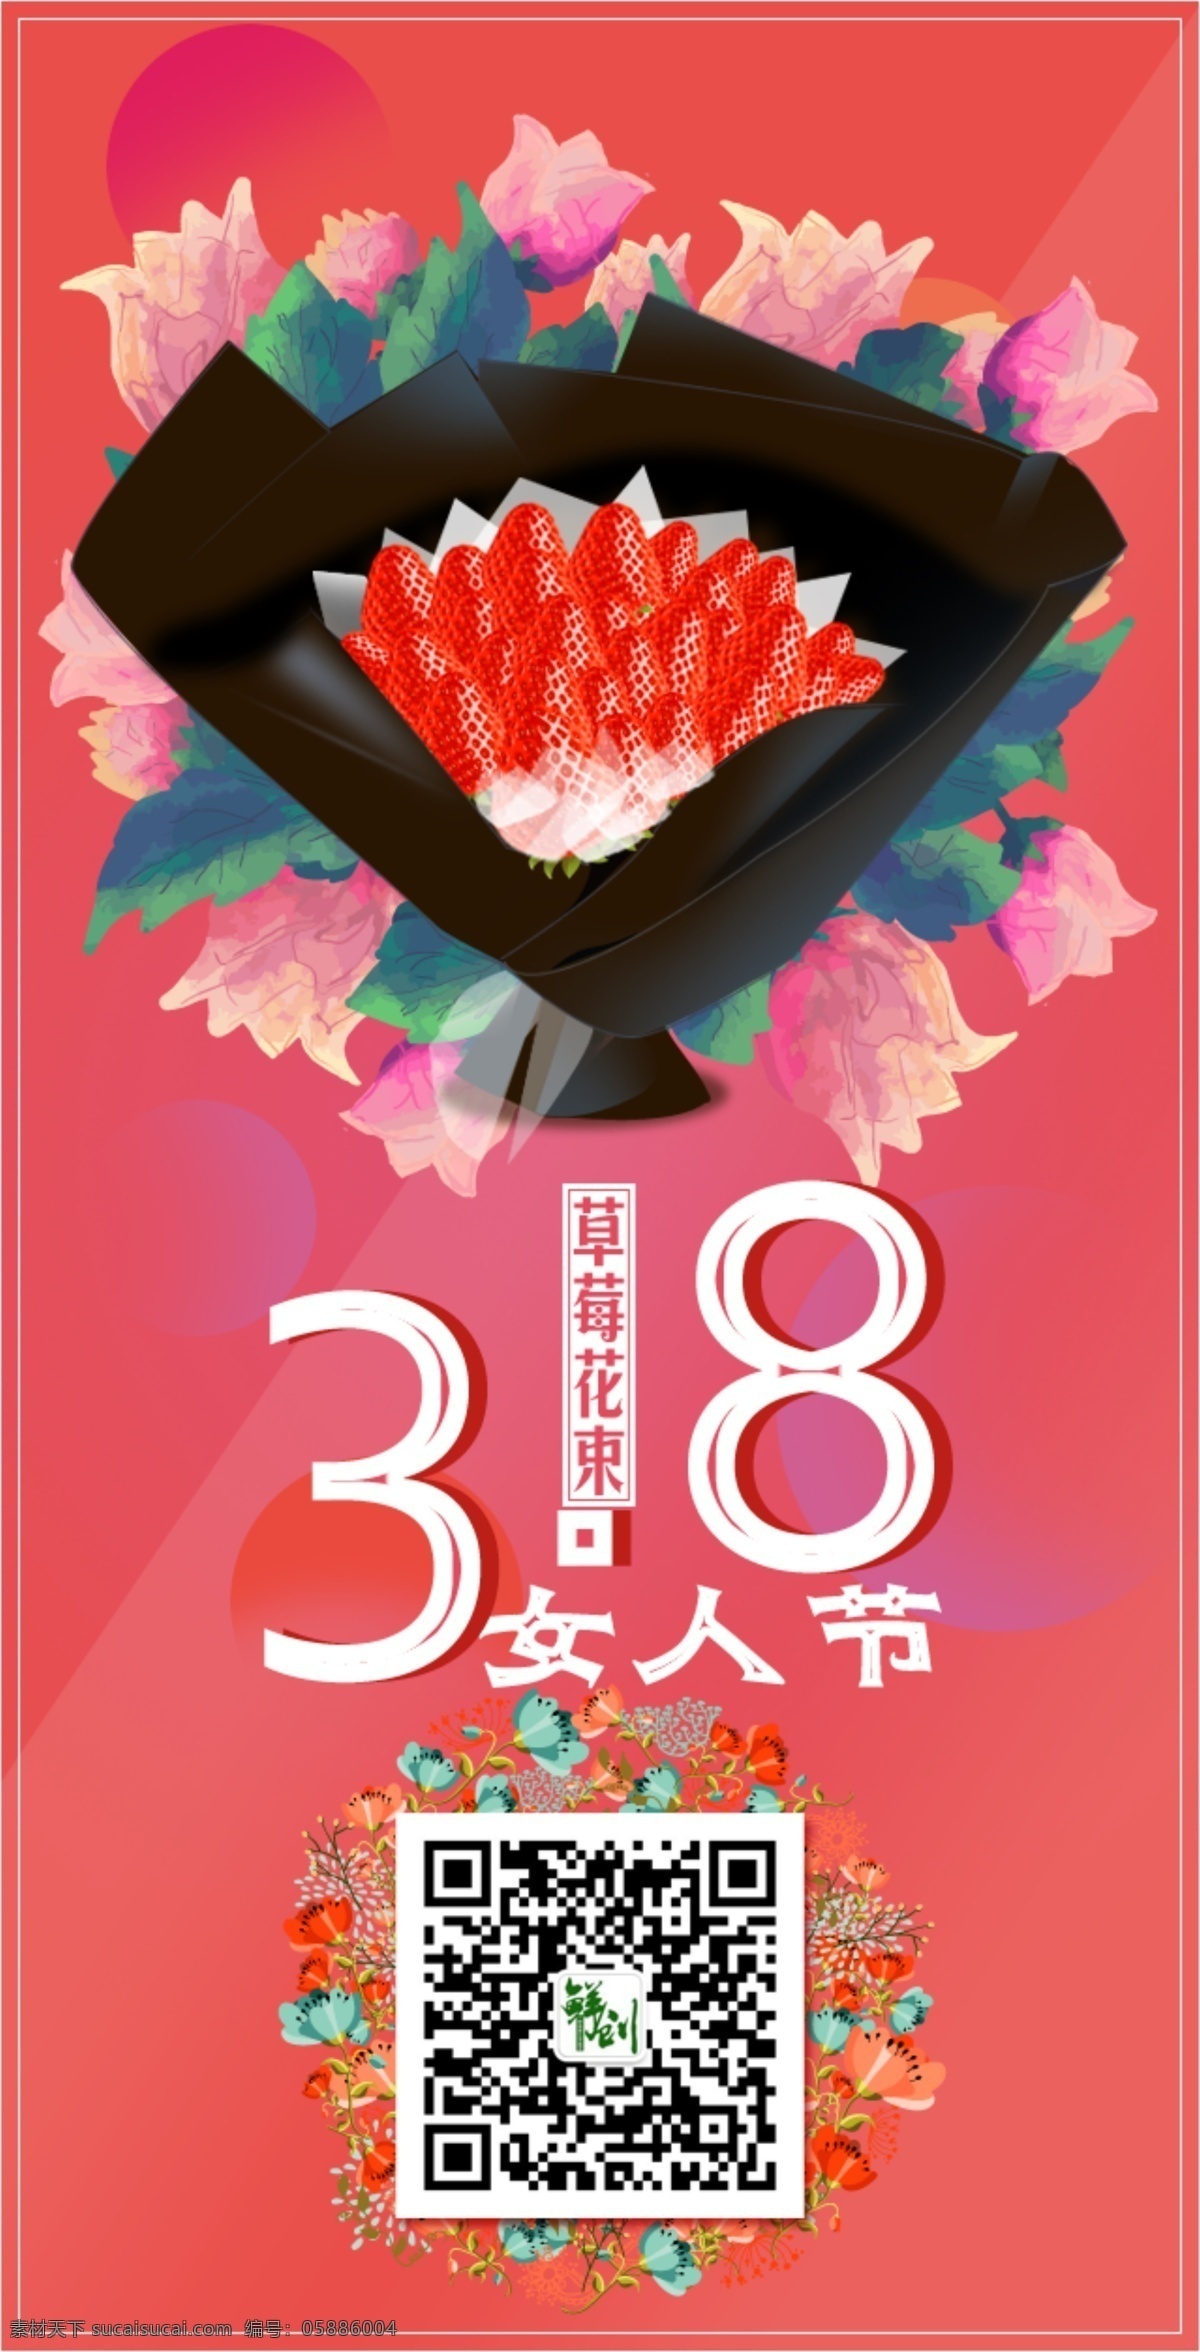 女神 节 妇女节 38 水果 花束 促销 h5 页面 女人节 女生节 女神节 水果花束 草莓